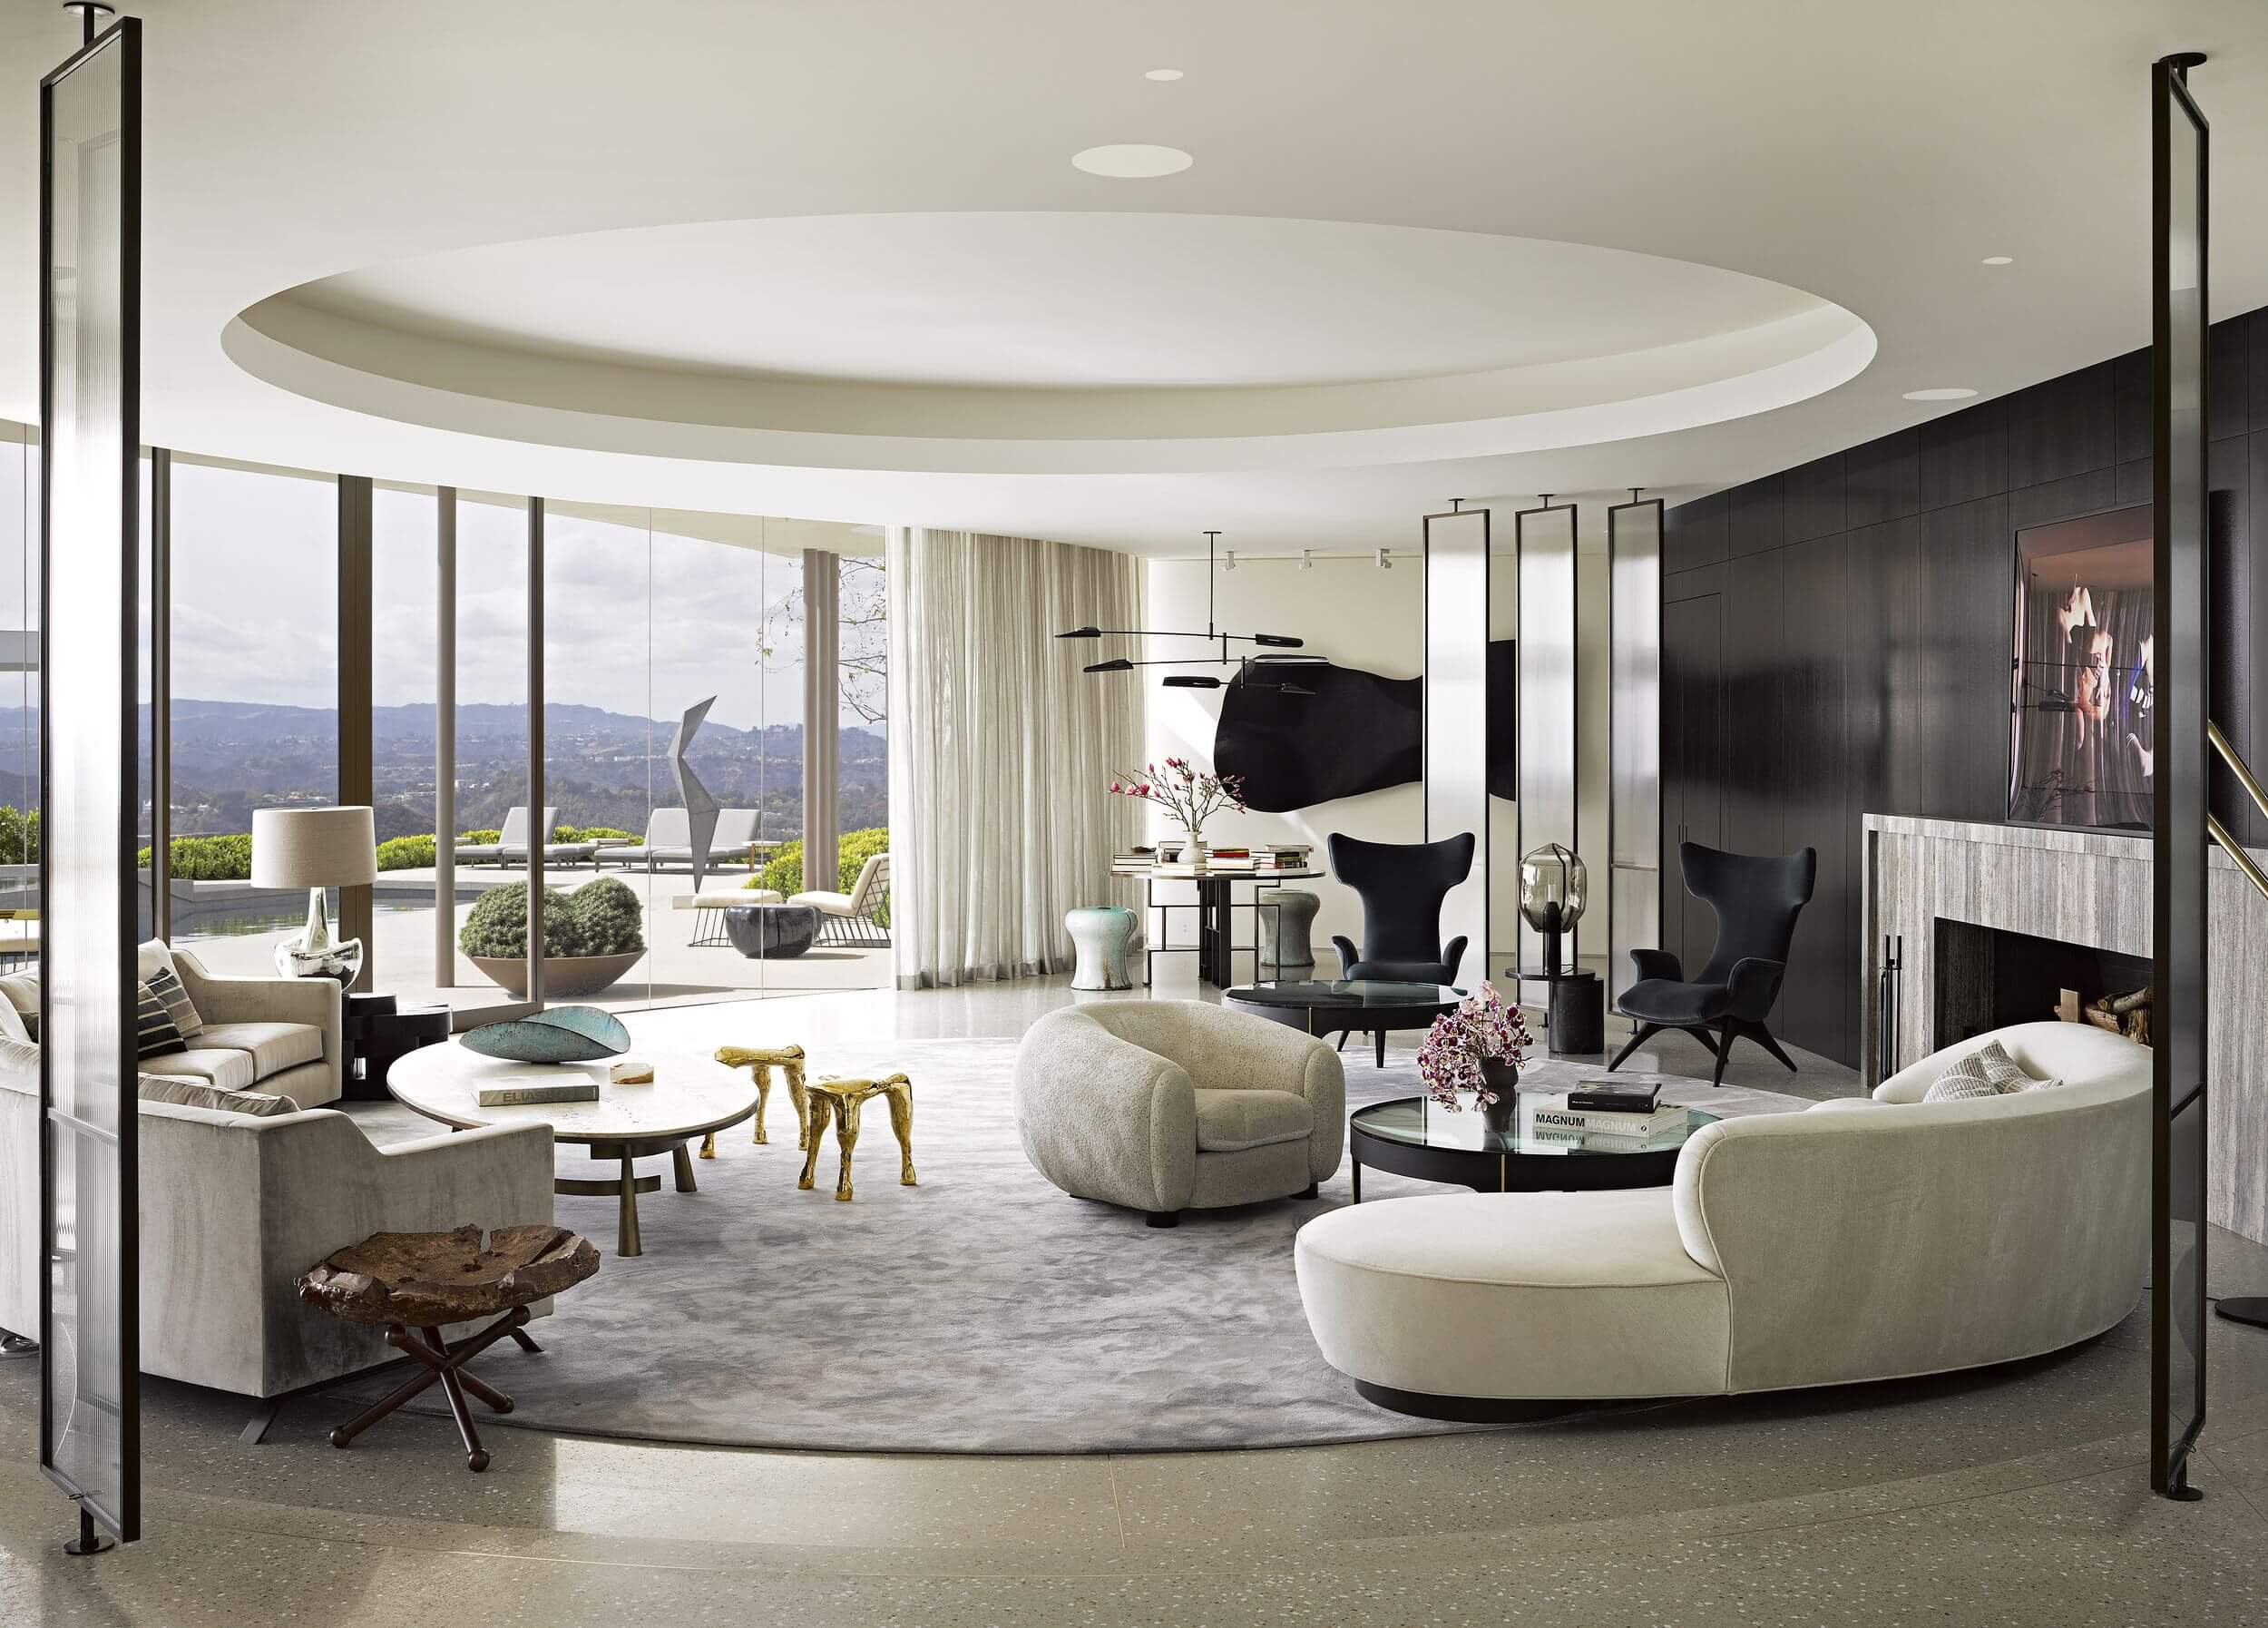 Jamie Bush living room with round sofas